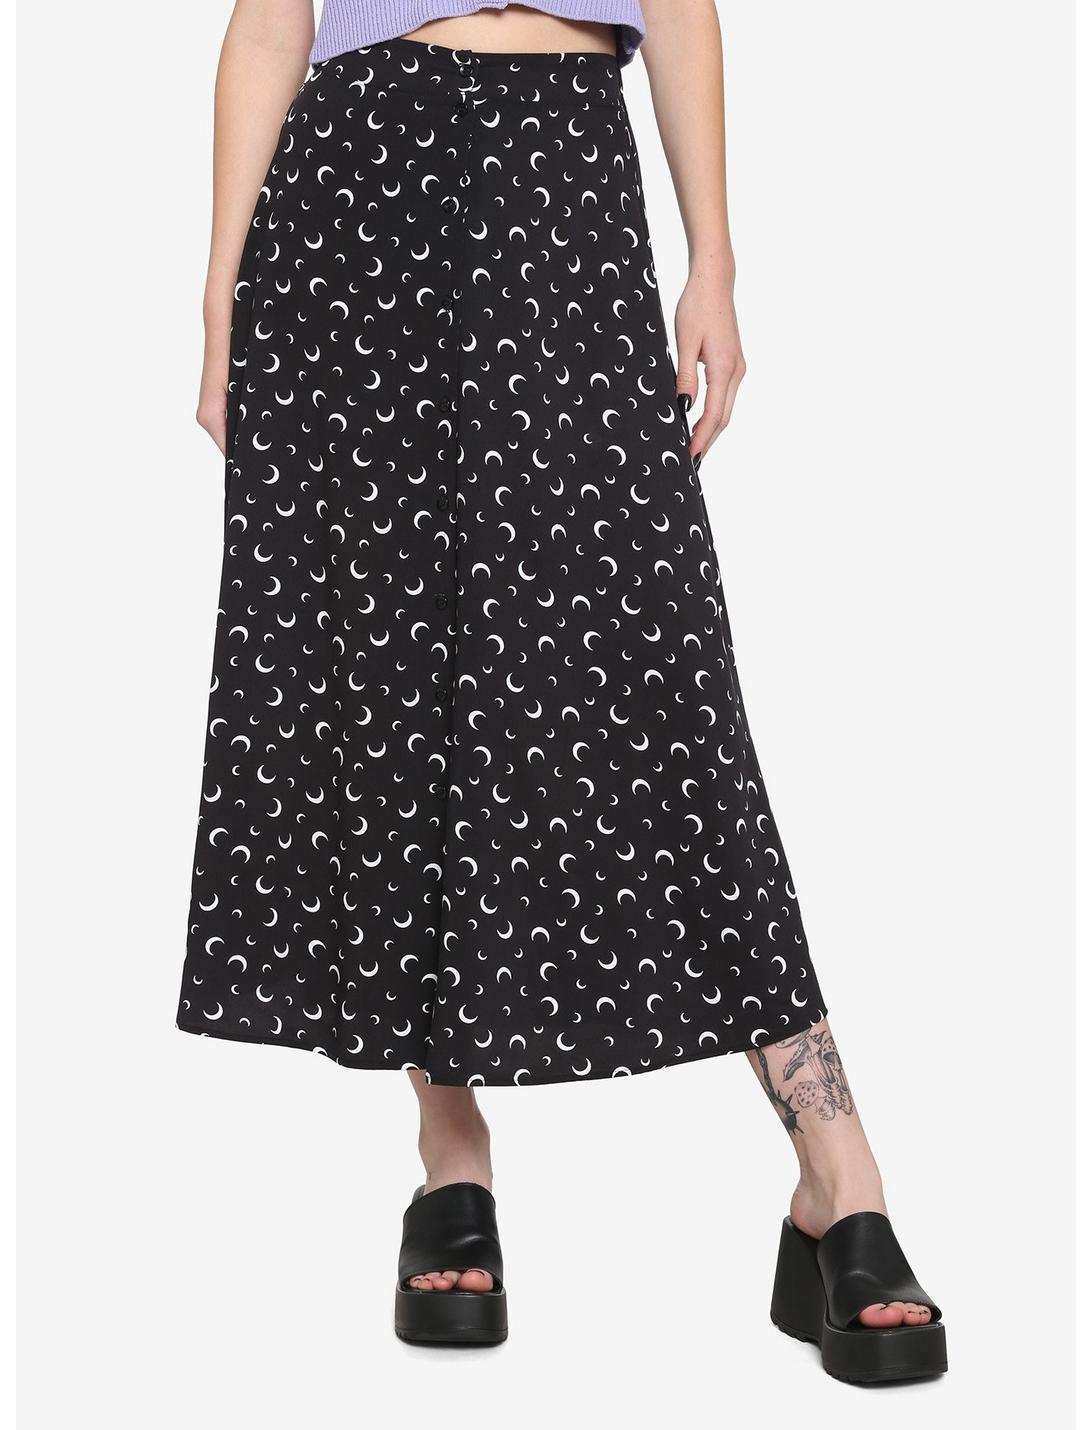 Crescent Moon Midi Skirt, BLACK, hi-res